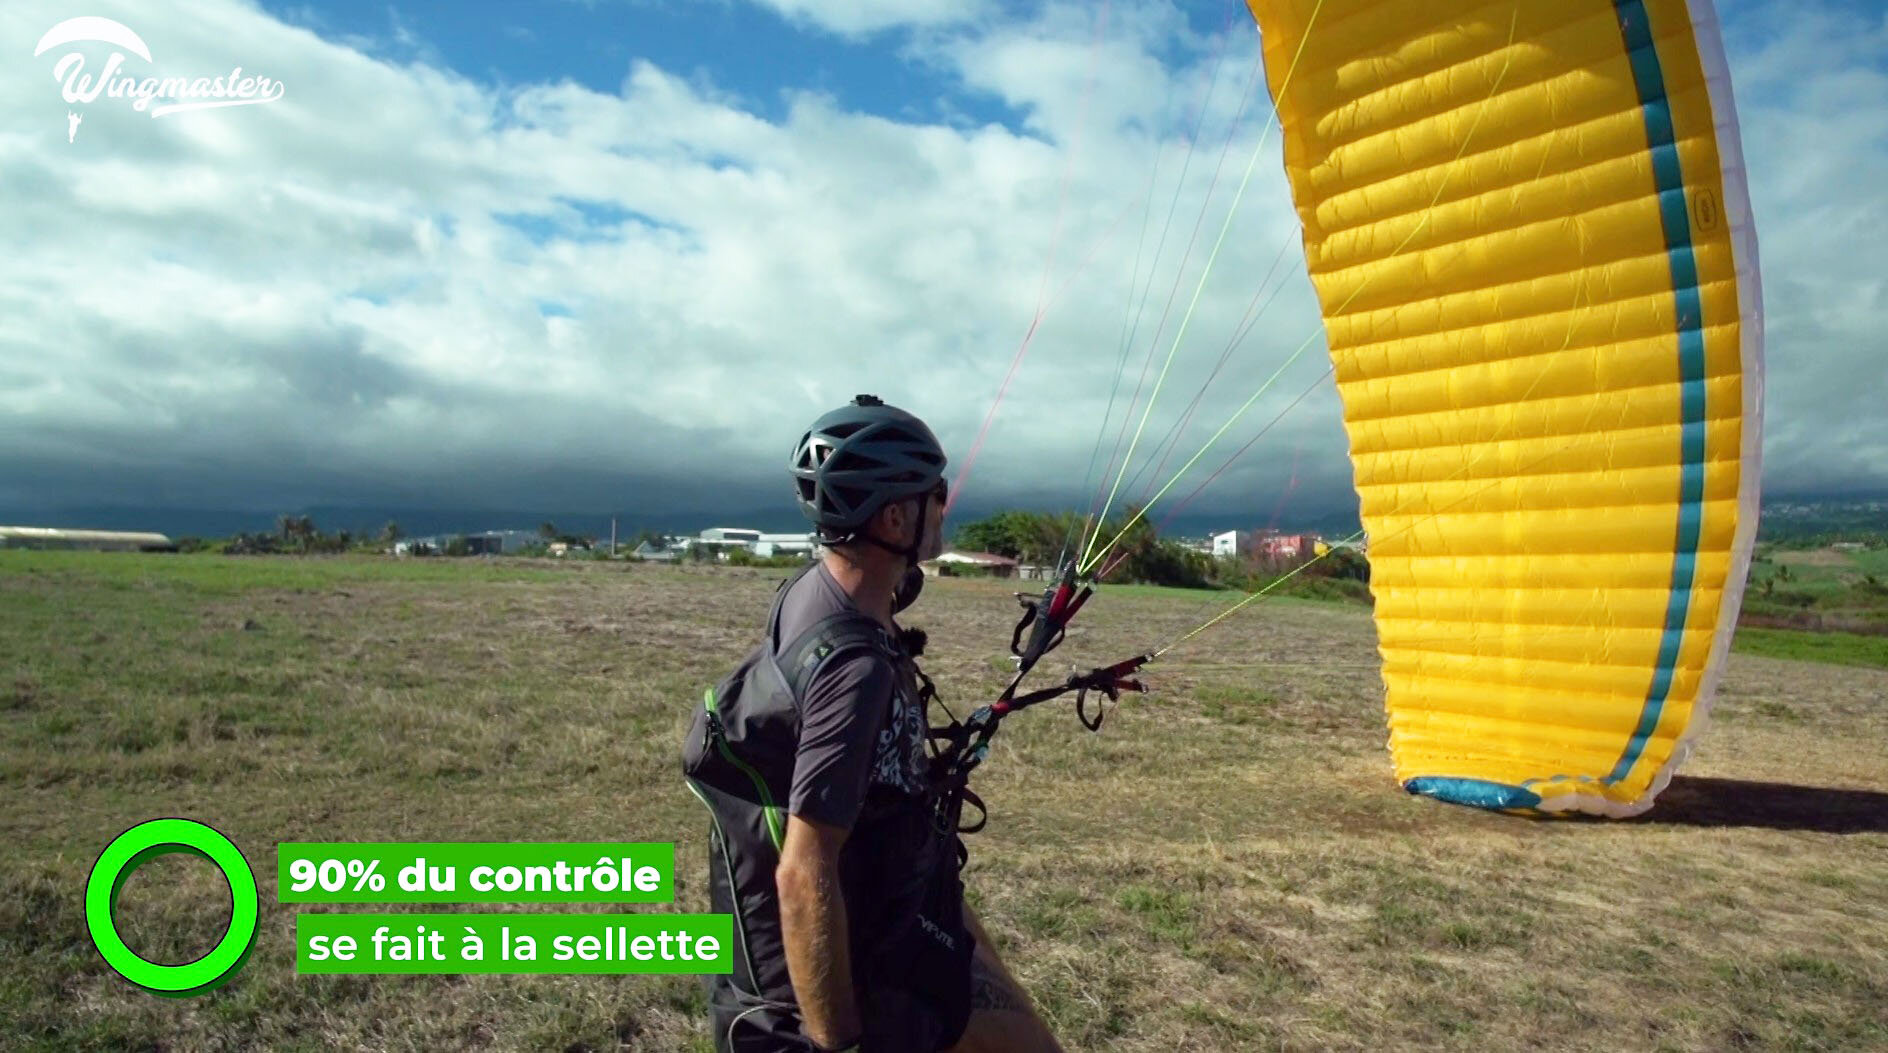  Wingmaster, Masterclass parapente vidéo avec Jérôme Canaud, formation parapente 22 épisodes, 12 heures, techniques parapente d'un pro, complément à la formation parapente. Pour tous les niveaux. 